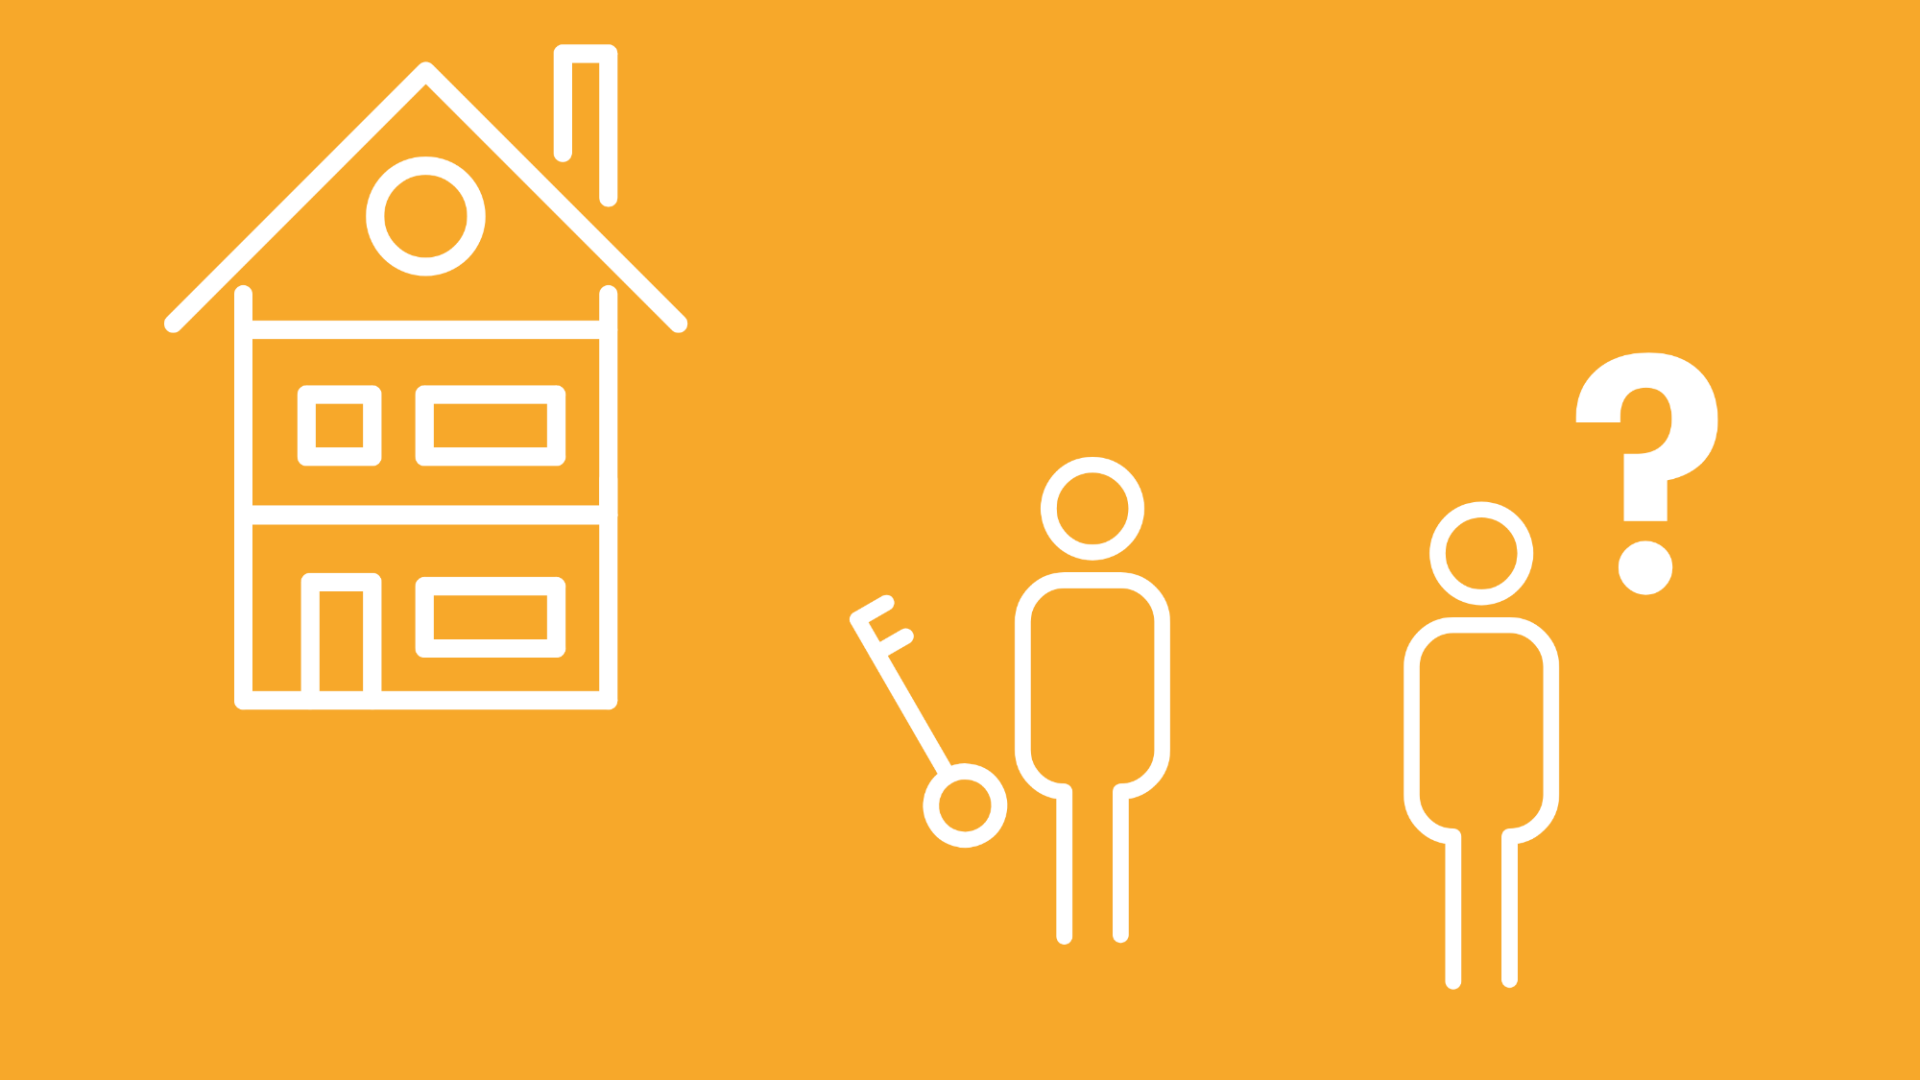 Ein Haus-Icon mit mehreren Apartments wird neben einer Person mit Schlüssel und einer Person ohne Schlüssel zusammen mit Fragezeichen abgebildet.